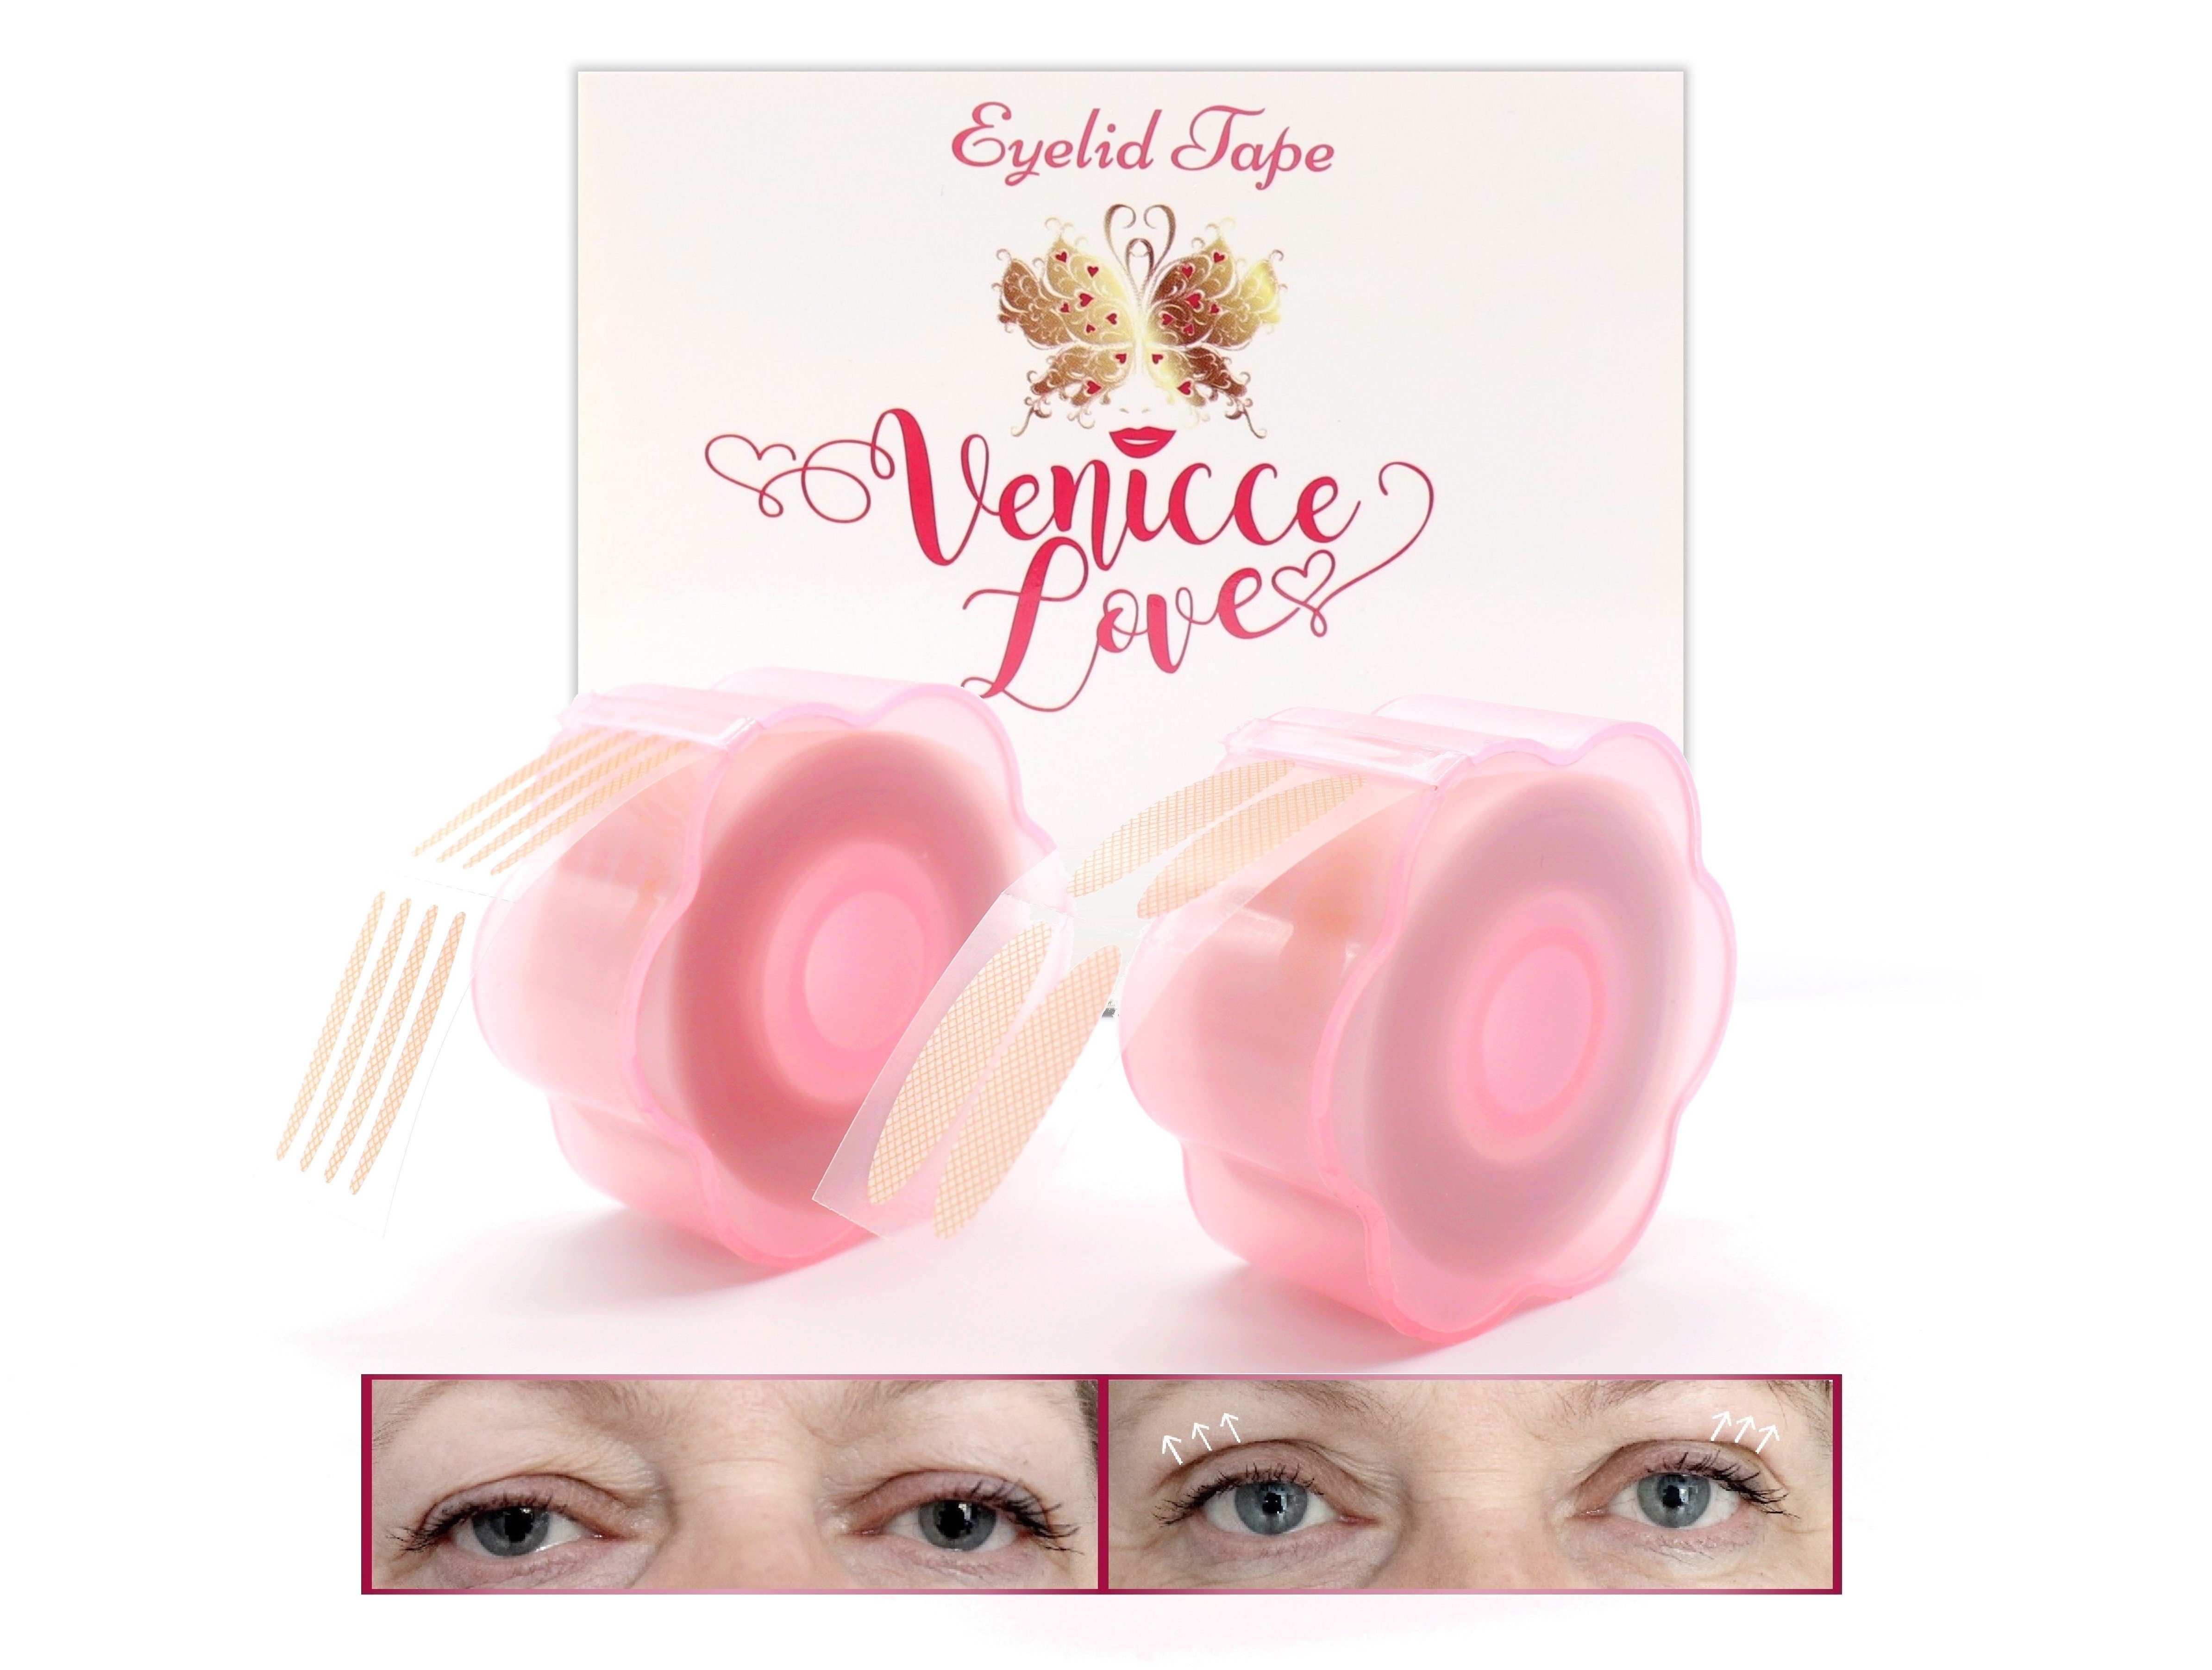 Venicce Love Augenlid-Tape 1.200 Stück Schlupflider Tapes, Augenlidstraffung ohne OP